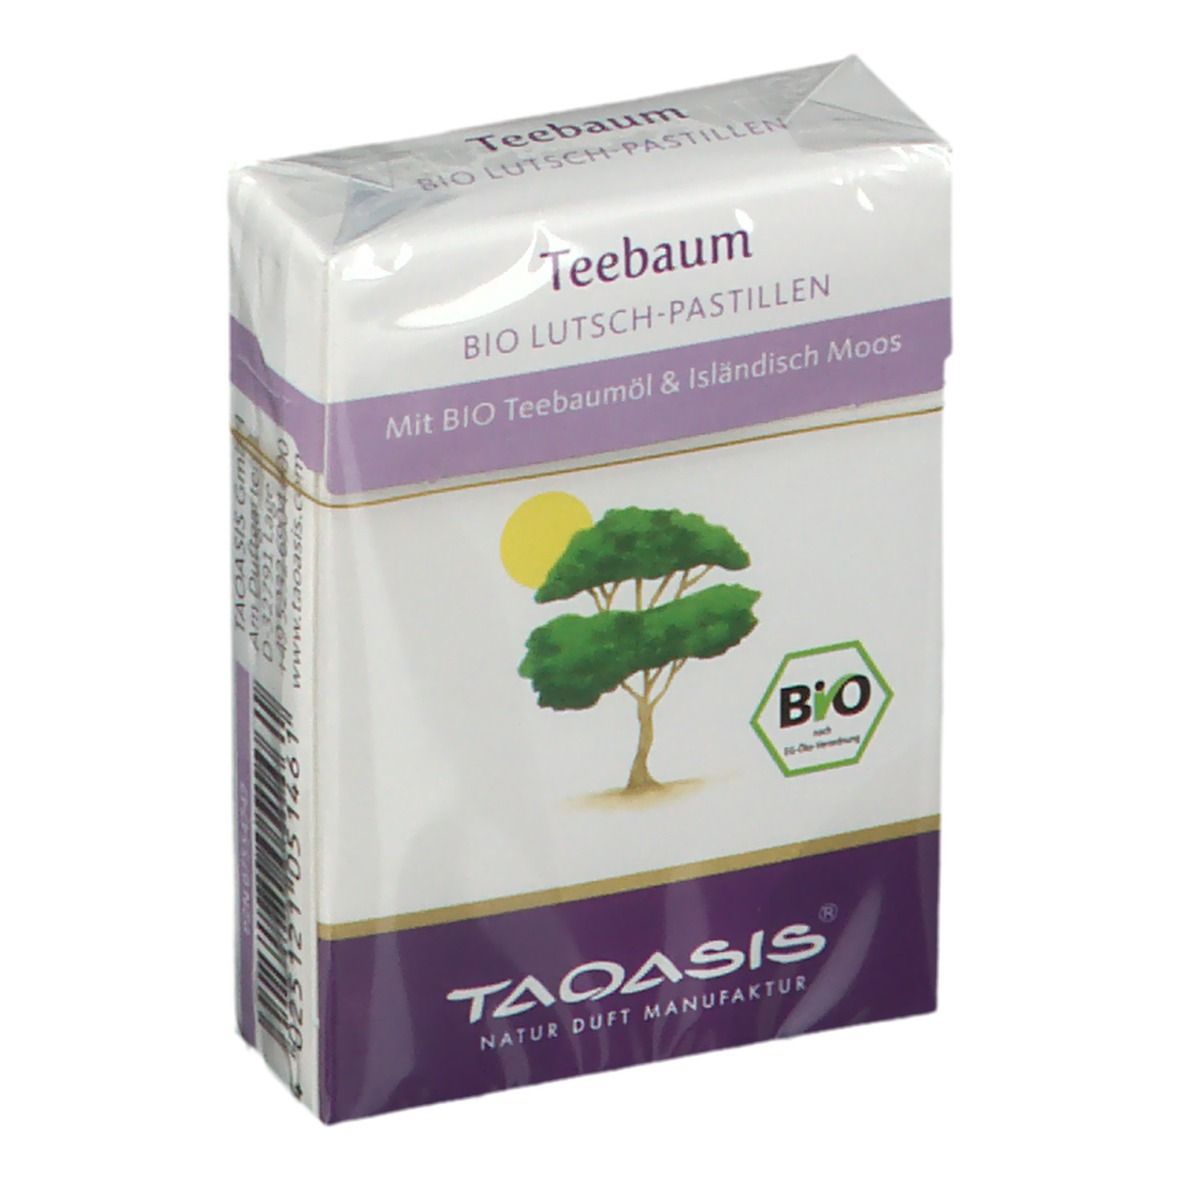 Teebaum-Pastillen BIO